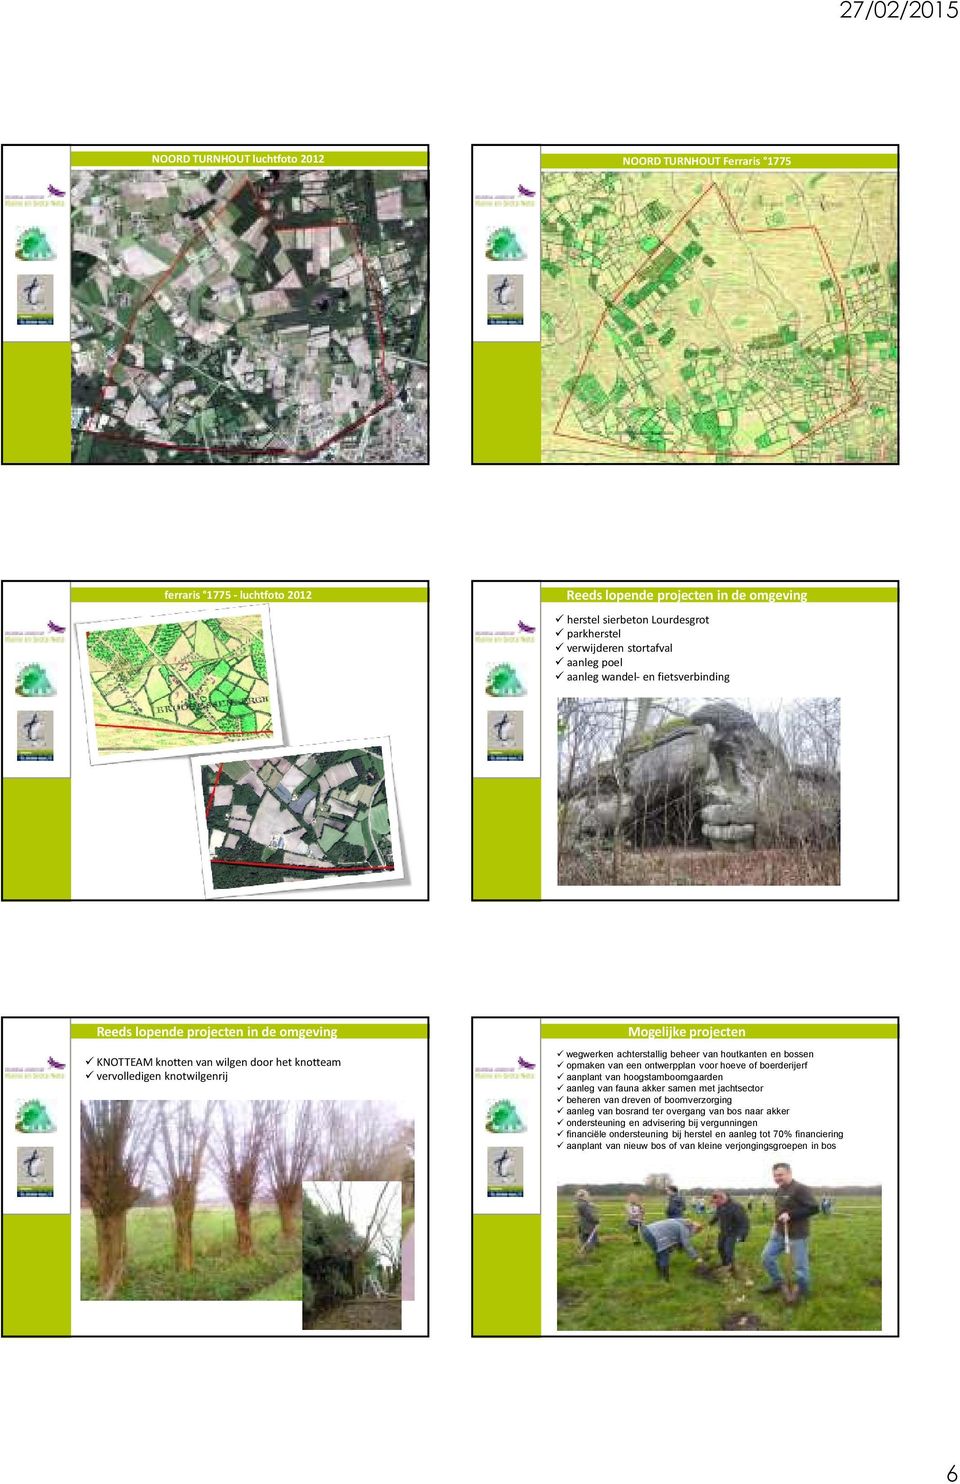 achterstallig beheer van houtkanten en bossen opmaken van een ontwerpplan voor hoeve of boerderijerf aanplant van hoogstamboomgaarden aanleg van fauna akker samen met jachtsector beheren van dreven